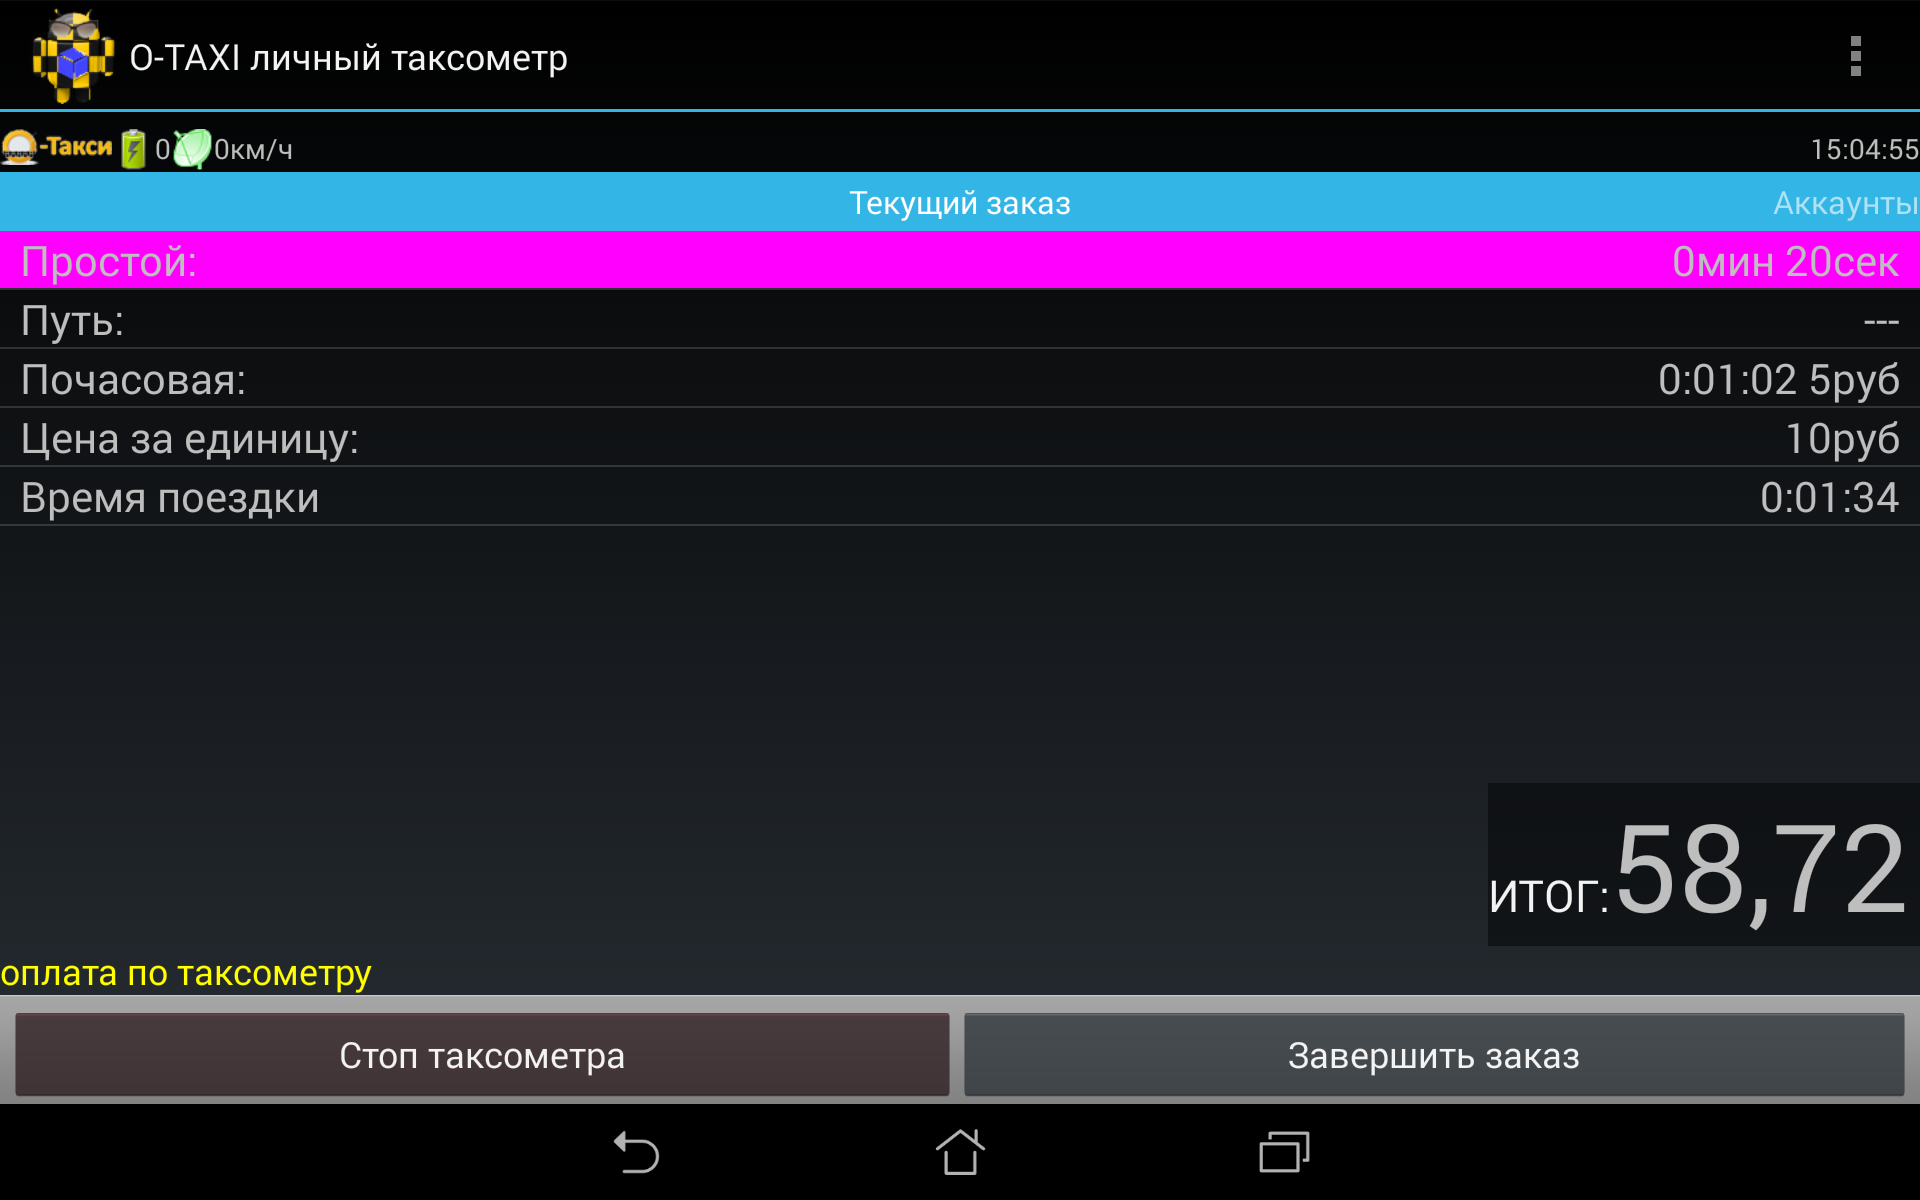 Android application О-ТАКСИ таксометр персональный screenshort